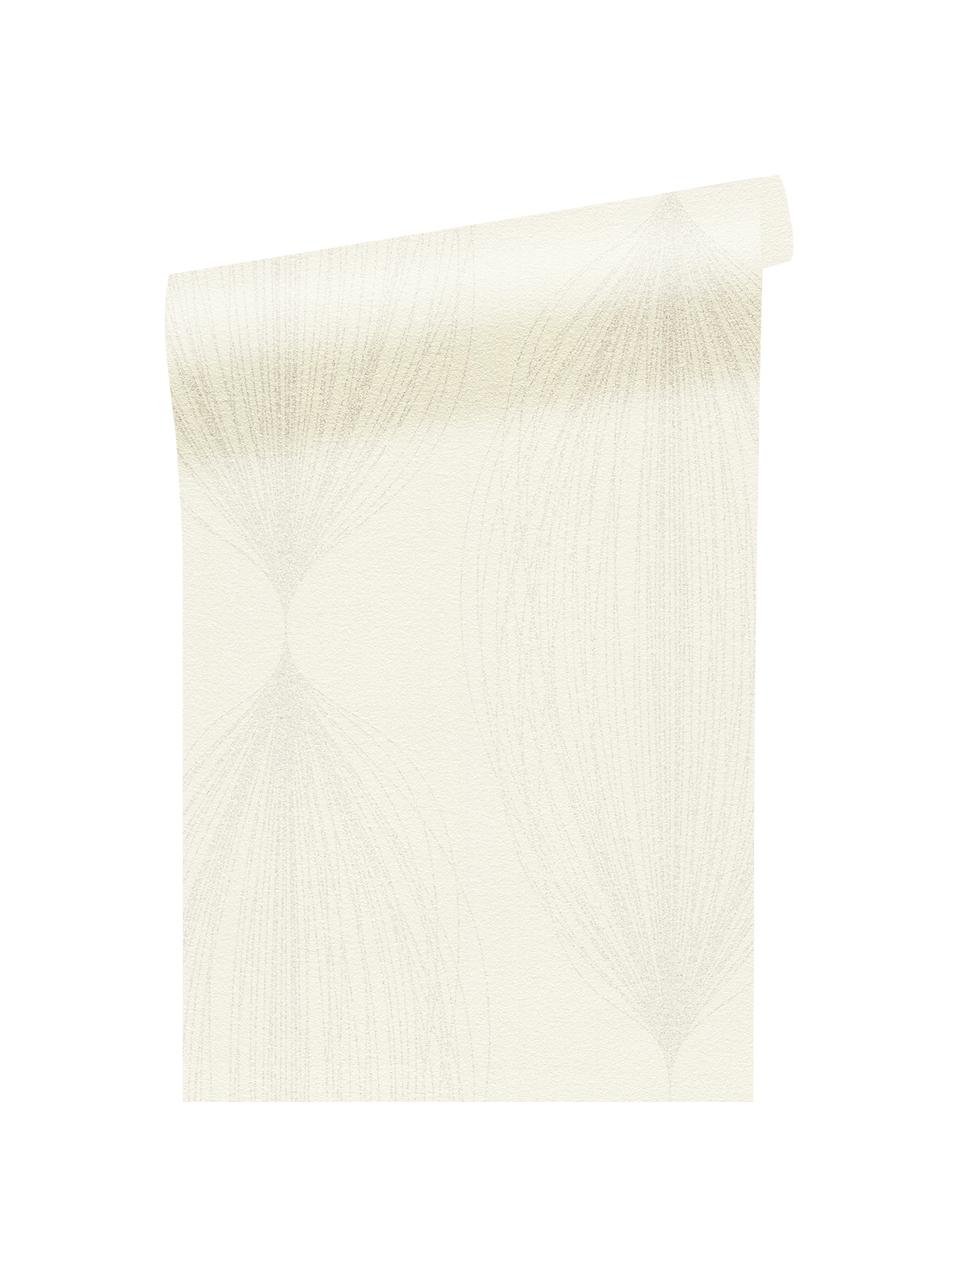 Tapeta Baloon, Polar, Biały, odcienie srebrnego, błyszczący, S 53 x D 1005 cm